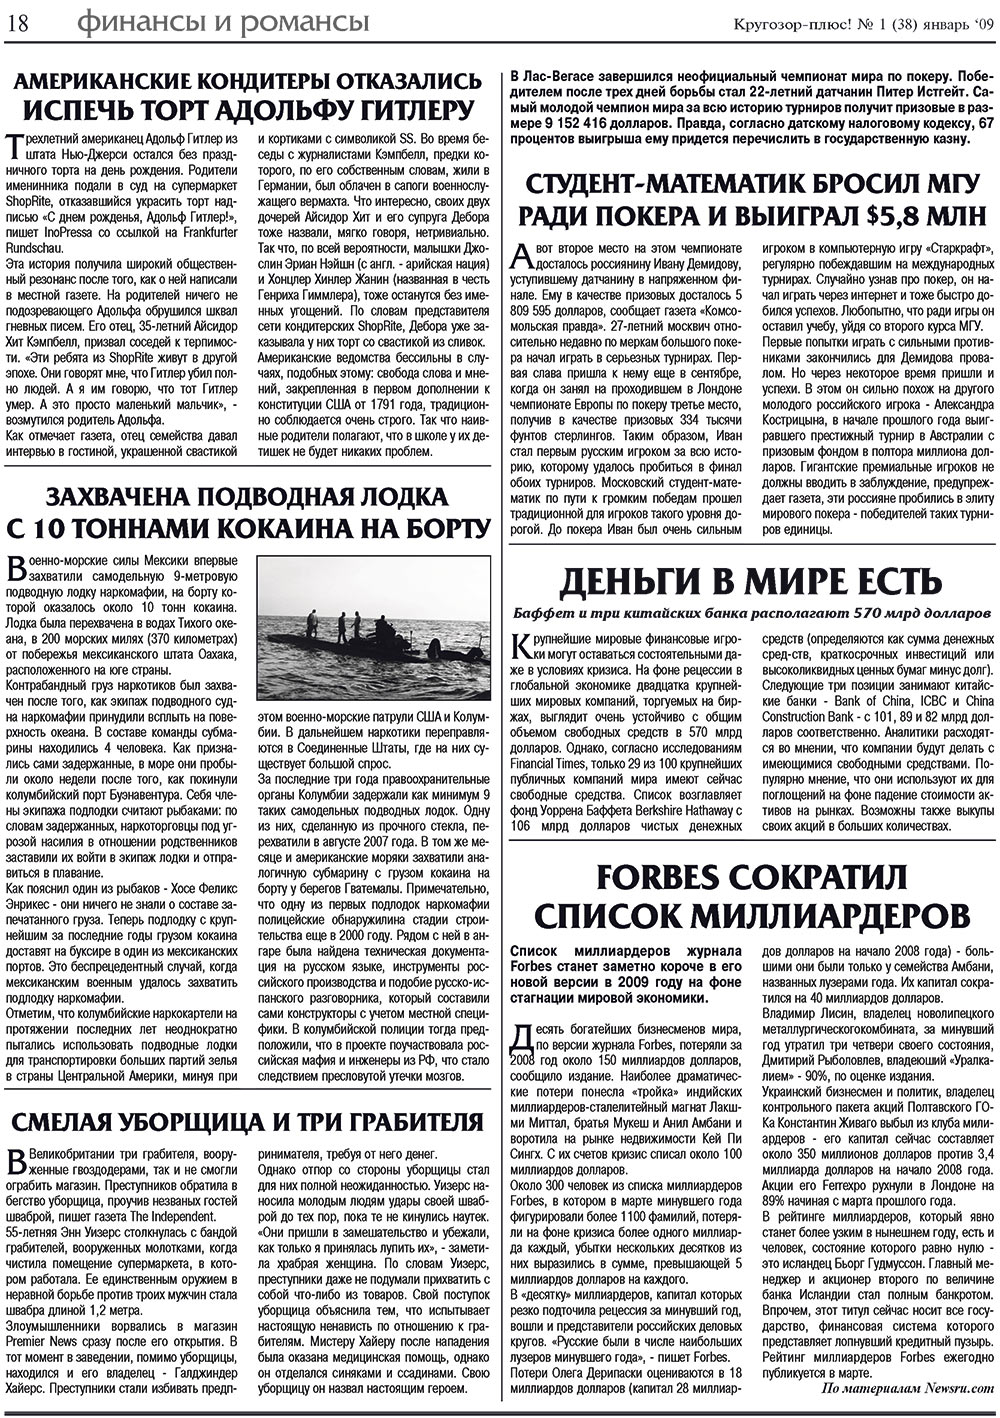 Кругозор плюс!, газета. 2009 №1 стр.18